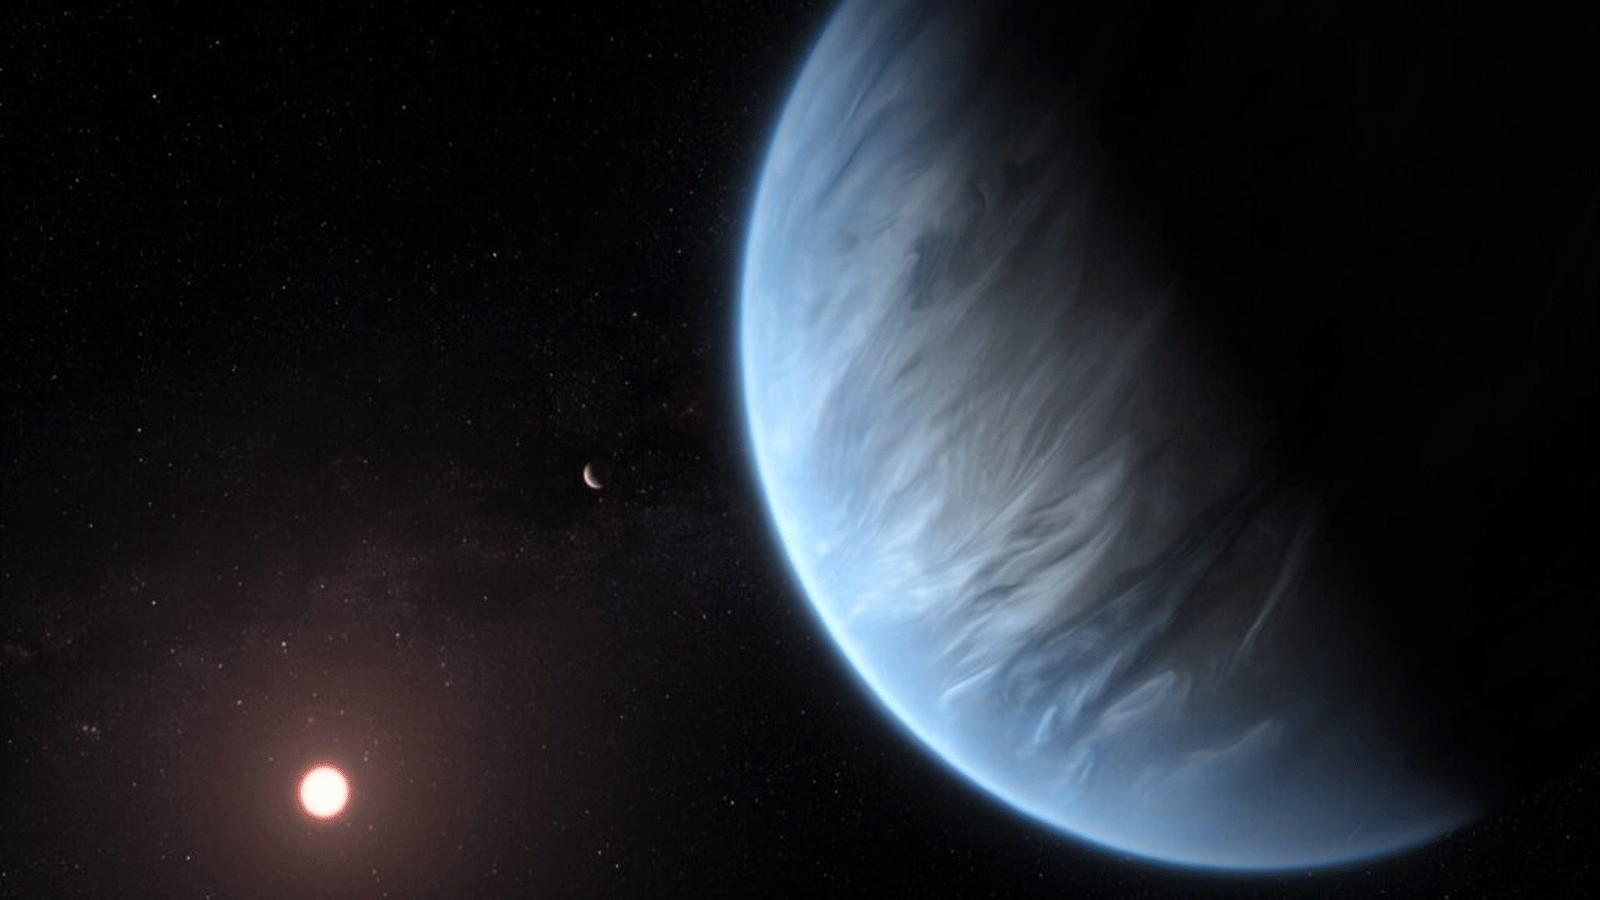 التلسكوب هابل يُظهر كوكب الفائق K2-18b، وهو الكوكب الخارجي الوحيد للأرض الفائق المعروف باستضافة كل من المياه ودرجات الحرارة التي يمكن أن تدعم الحياة.